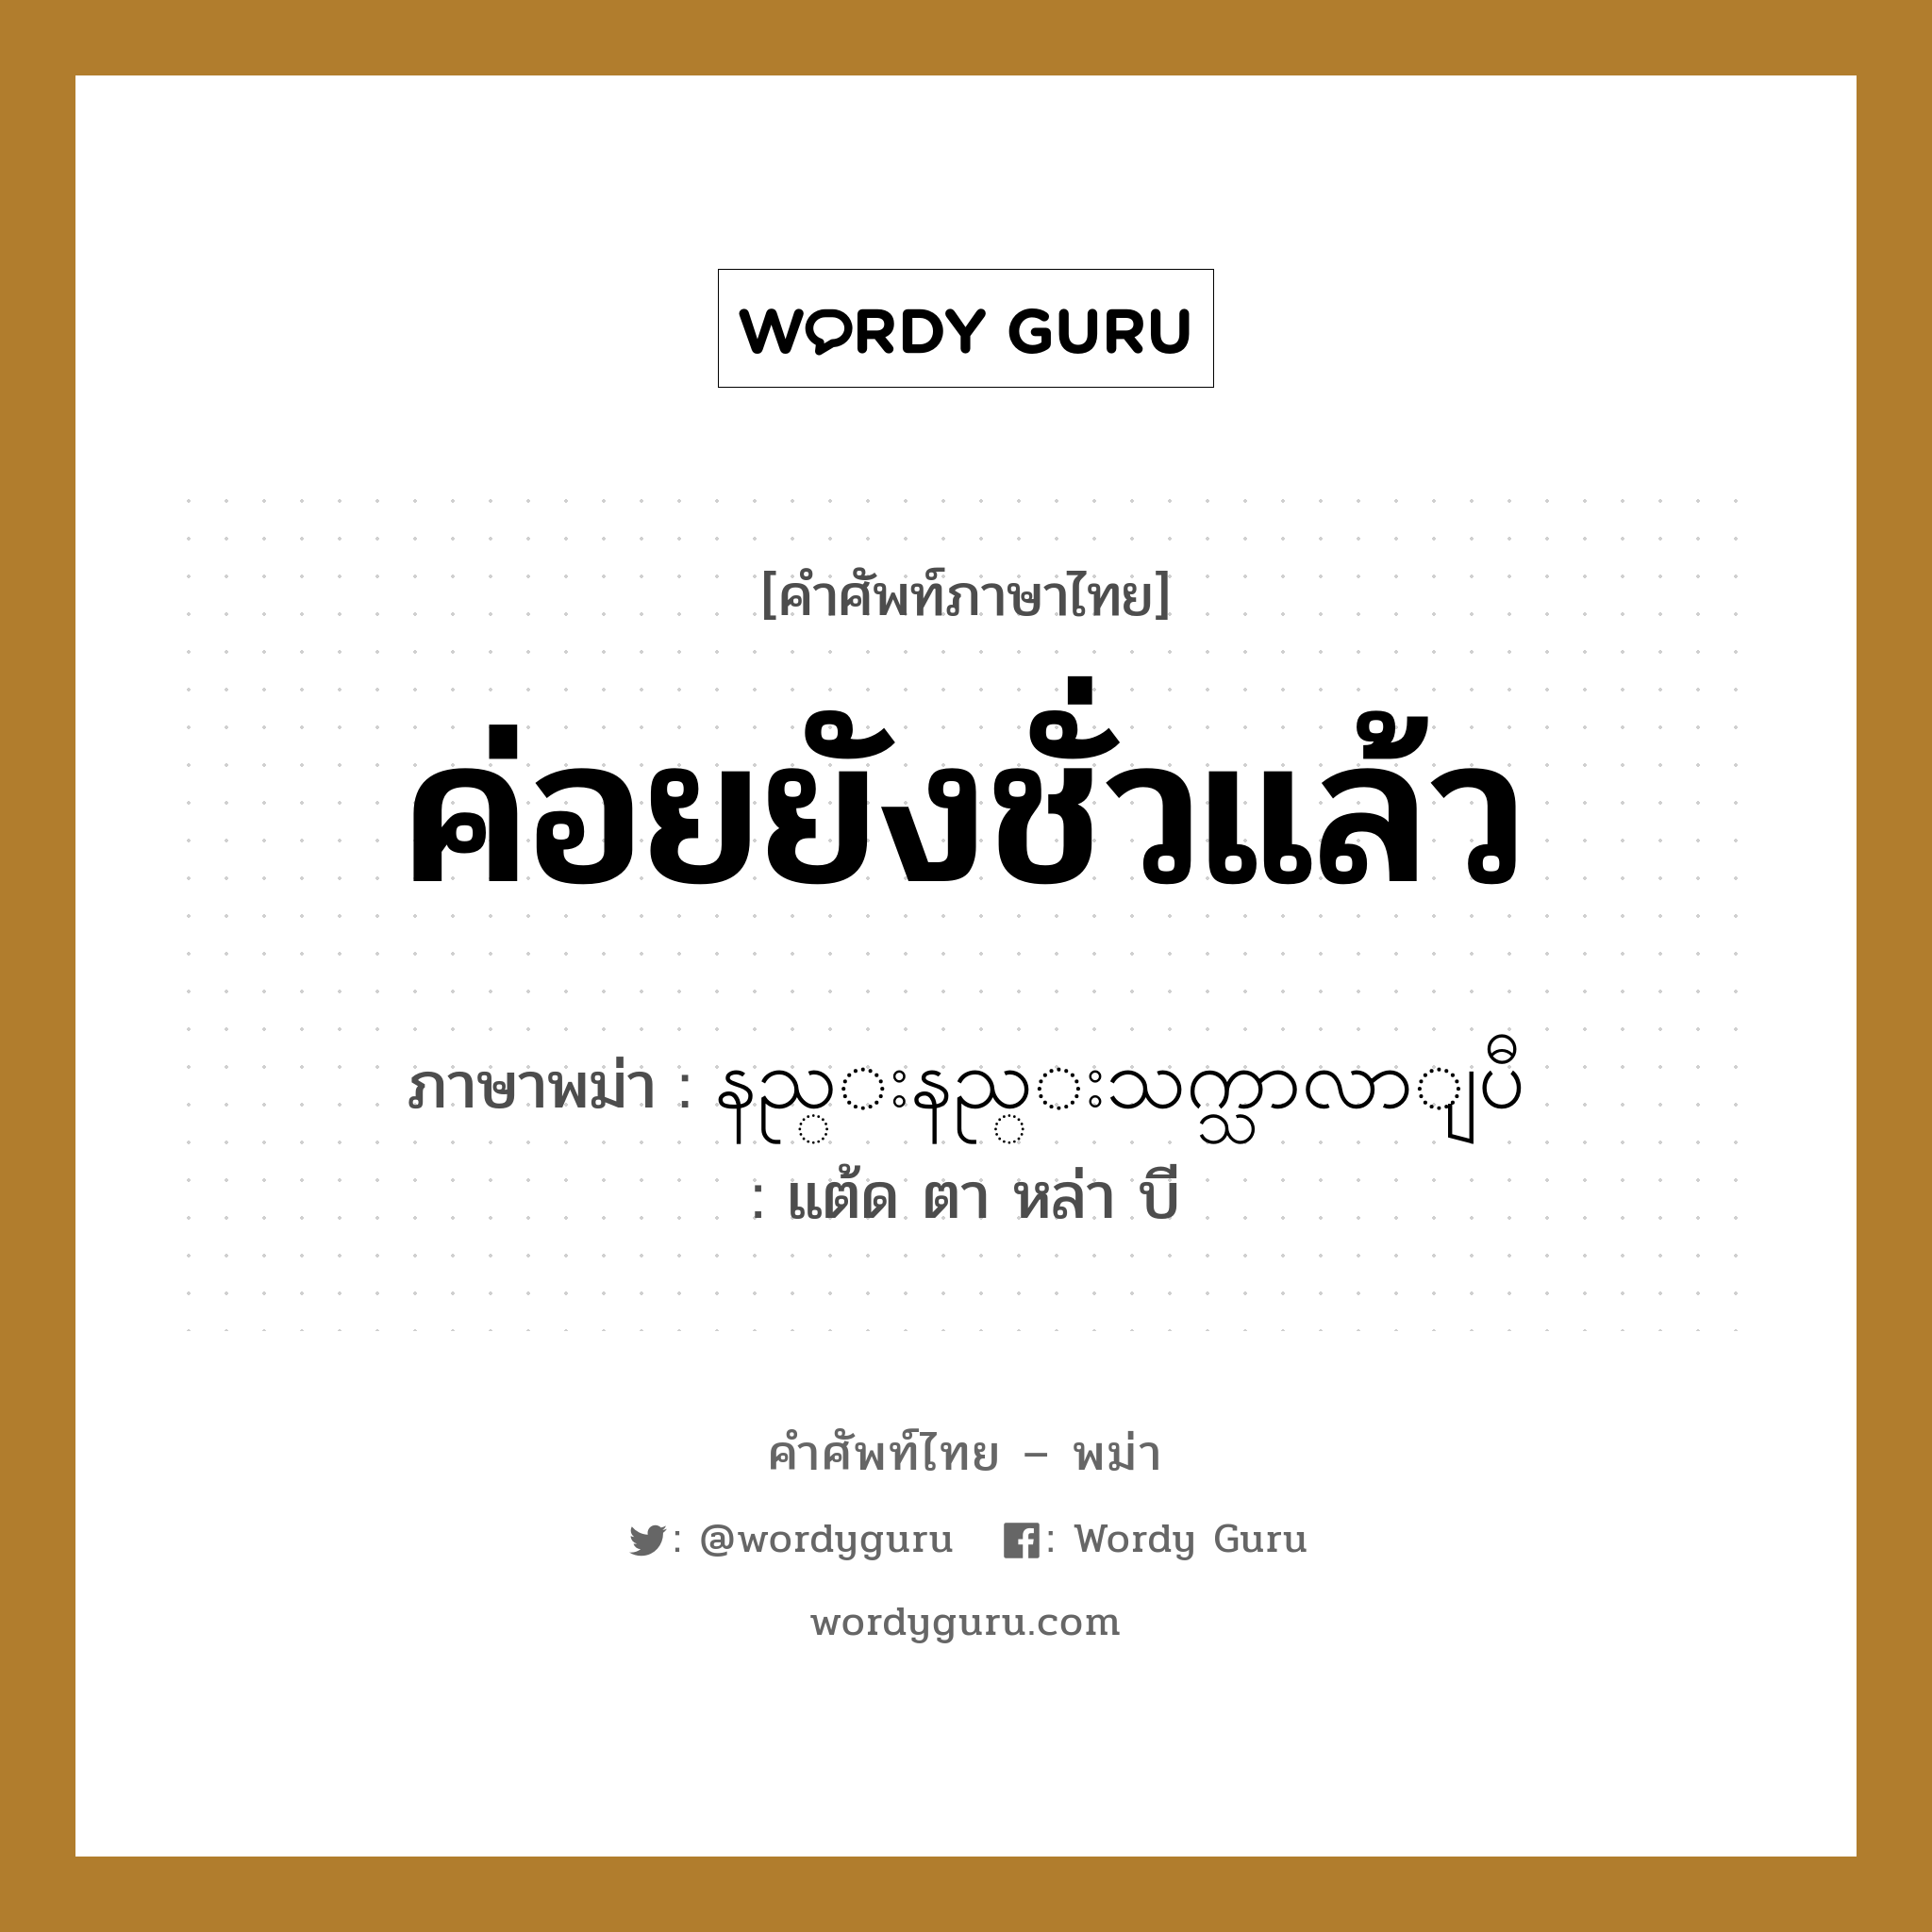 နည္းနည္းသက္သာလာျပီ ภาษาไทย?, คำศัพท์ภาษาไทย - พม่า နည္းနည္းသက္သာလာျပီ ภาษาพม่า ค่อยยังชั่วแล้ว หมวด หมวดโรคและยารักษา แต้ด ตา หล่า บี หมวด หมวดโรคและยารักษา